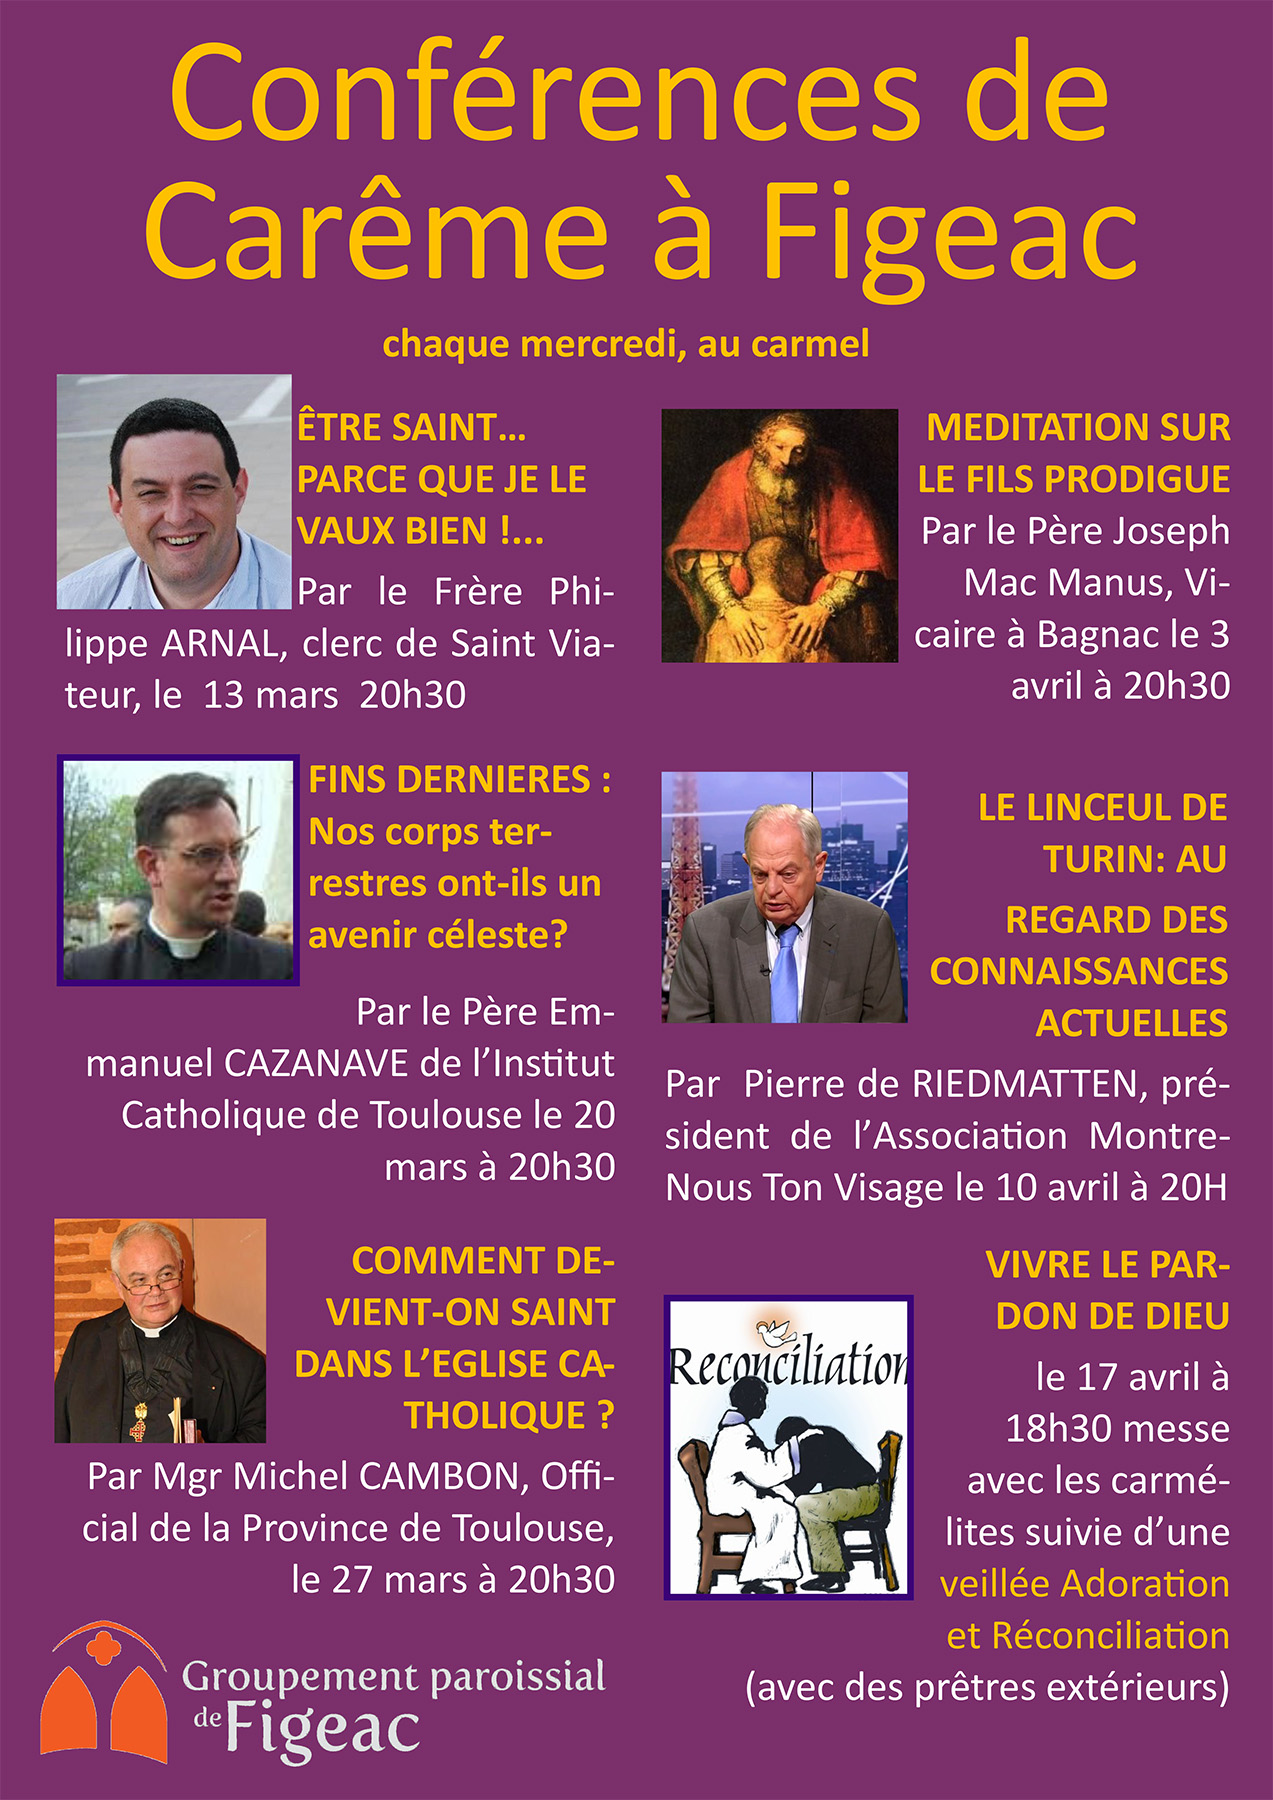 Conférences de Carême à Figeac (46) les 10 & 17 avril 2019